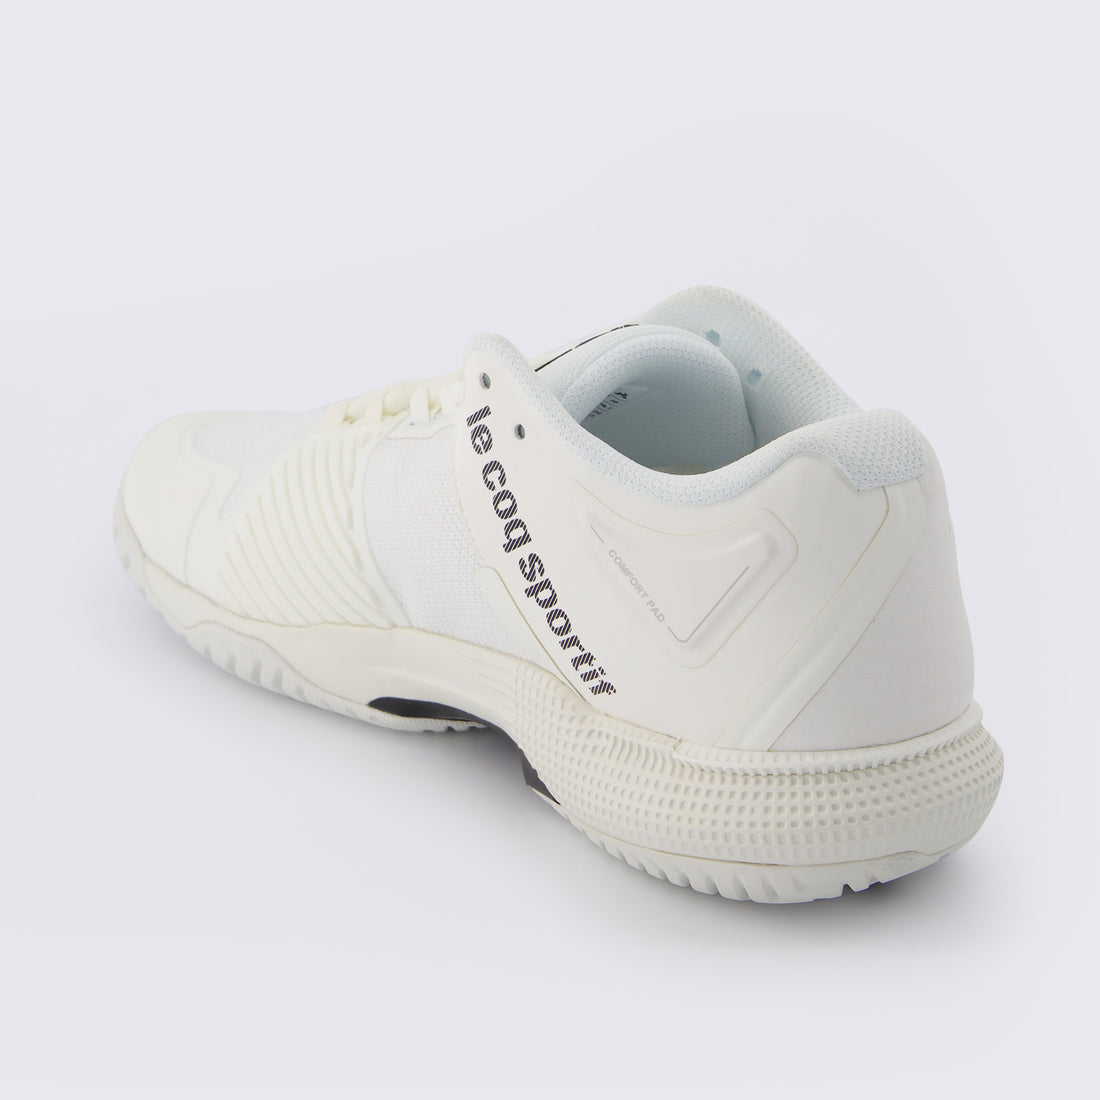 2210976-FUTUR LCS T01 ALL COURT bright white  | Schuhe de tennis FUTUR LCS T01 ALL COURT Unisex